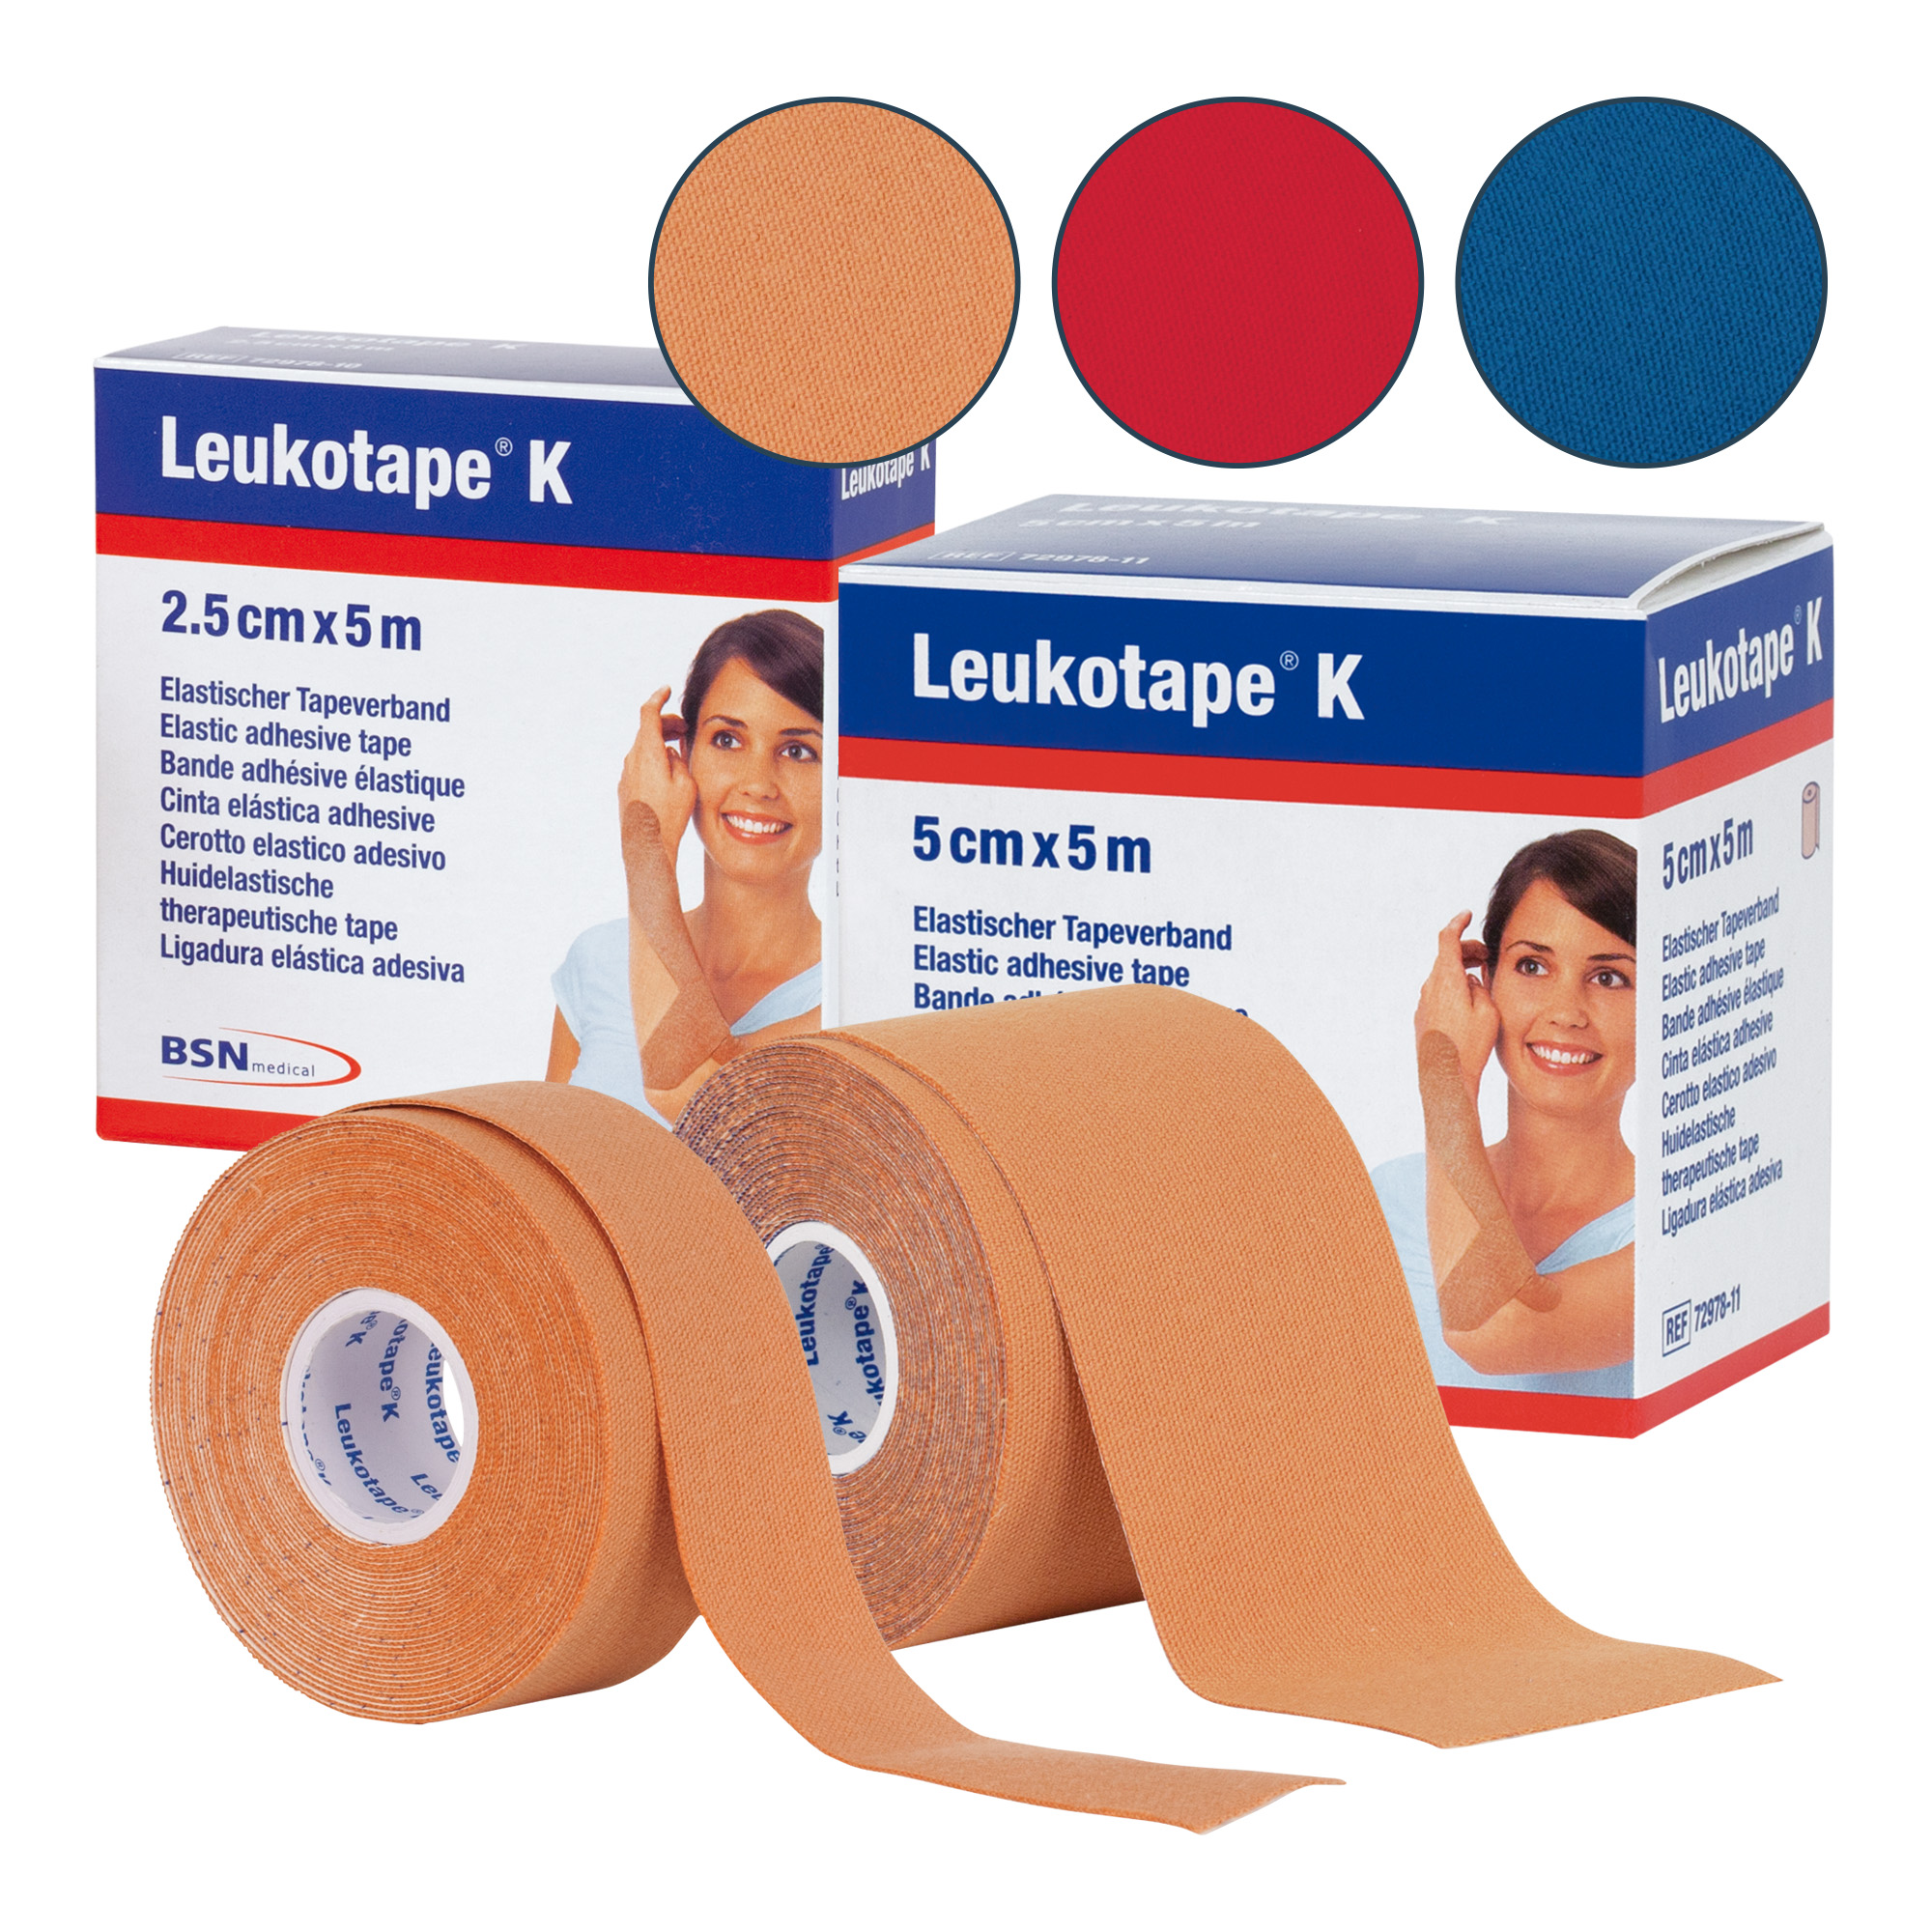 Cerotto elastico per taping Leukotape K